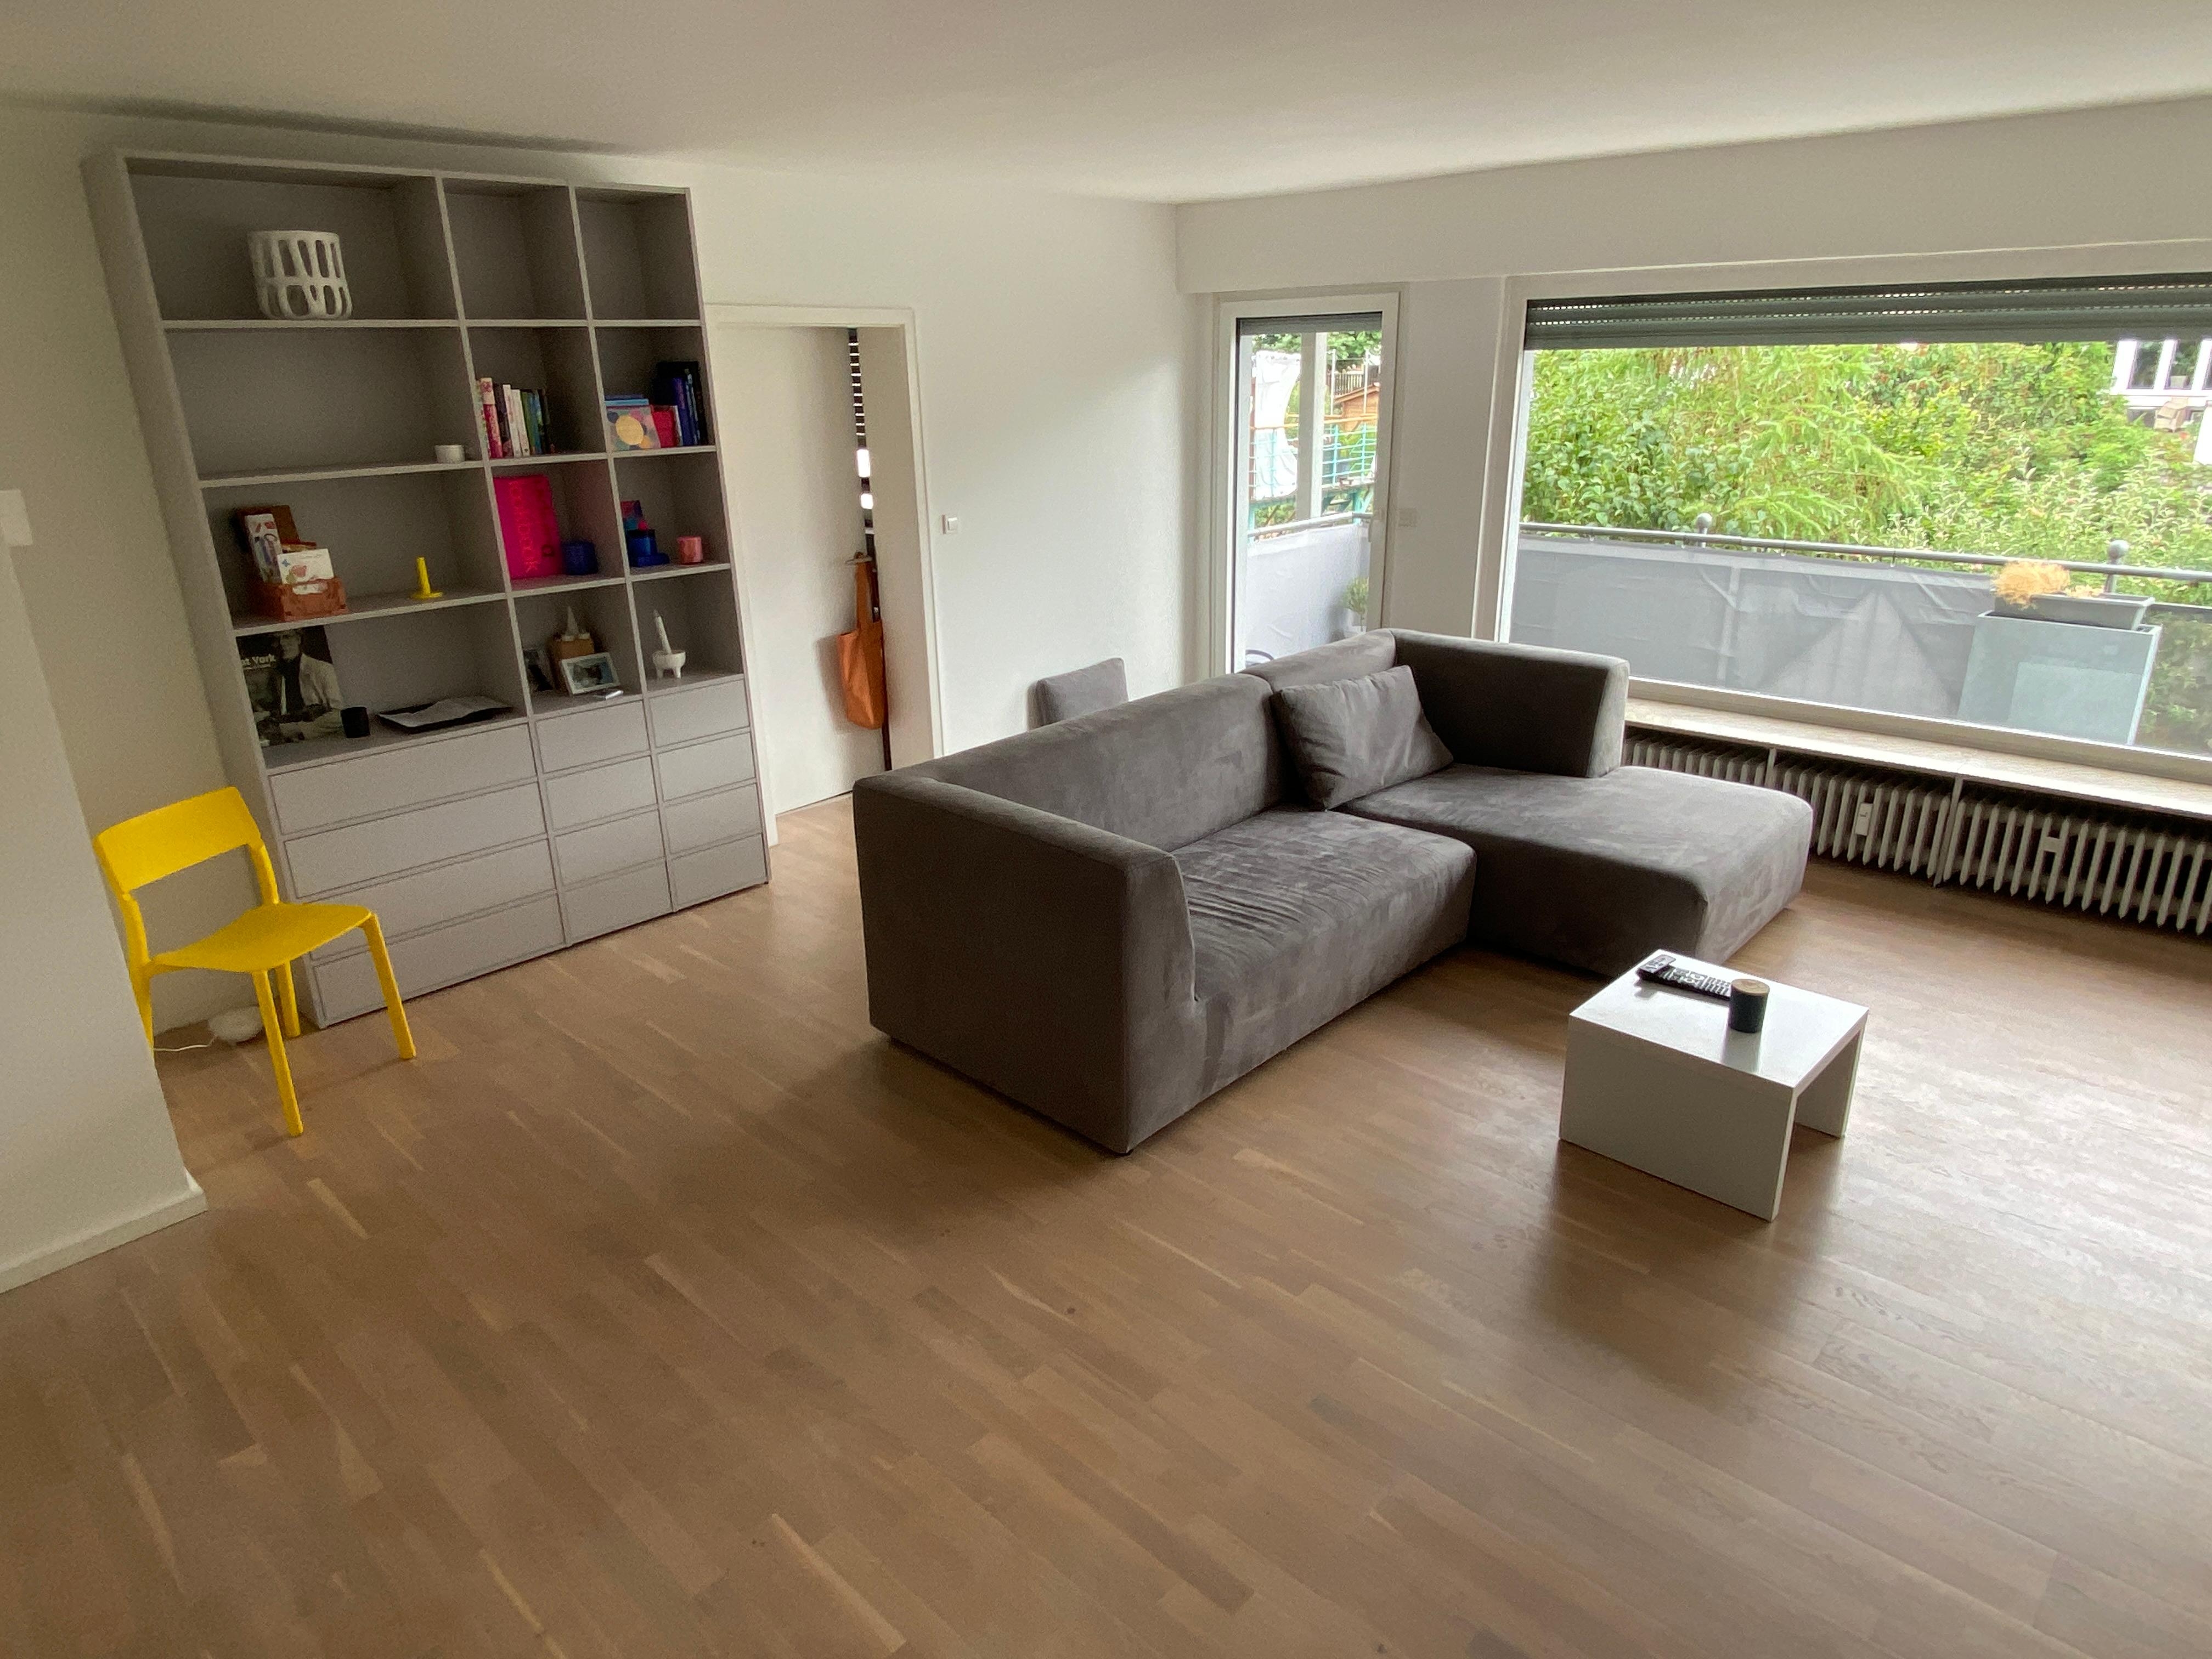 #wohnzimmerumstyling Ich mag es minimalistisch und schlicht,aber trotzdem farbig und es fehlt ganz dringend ein Teppich 